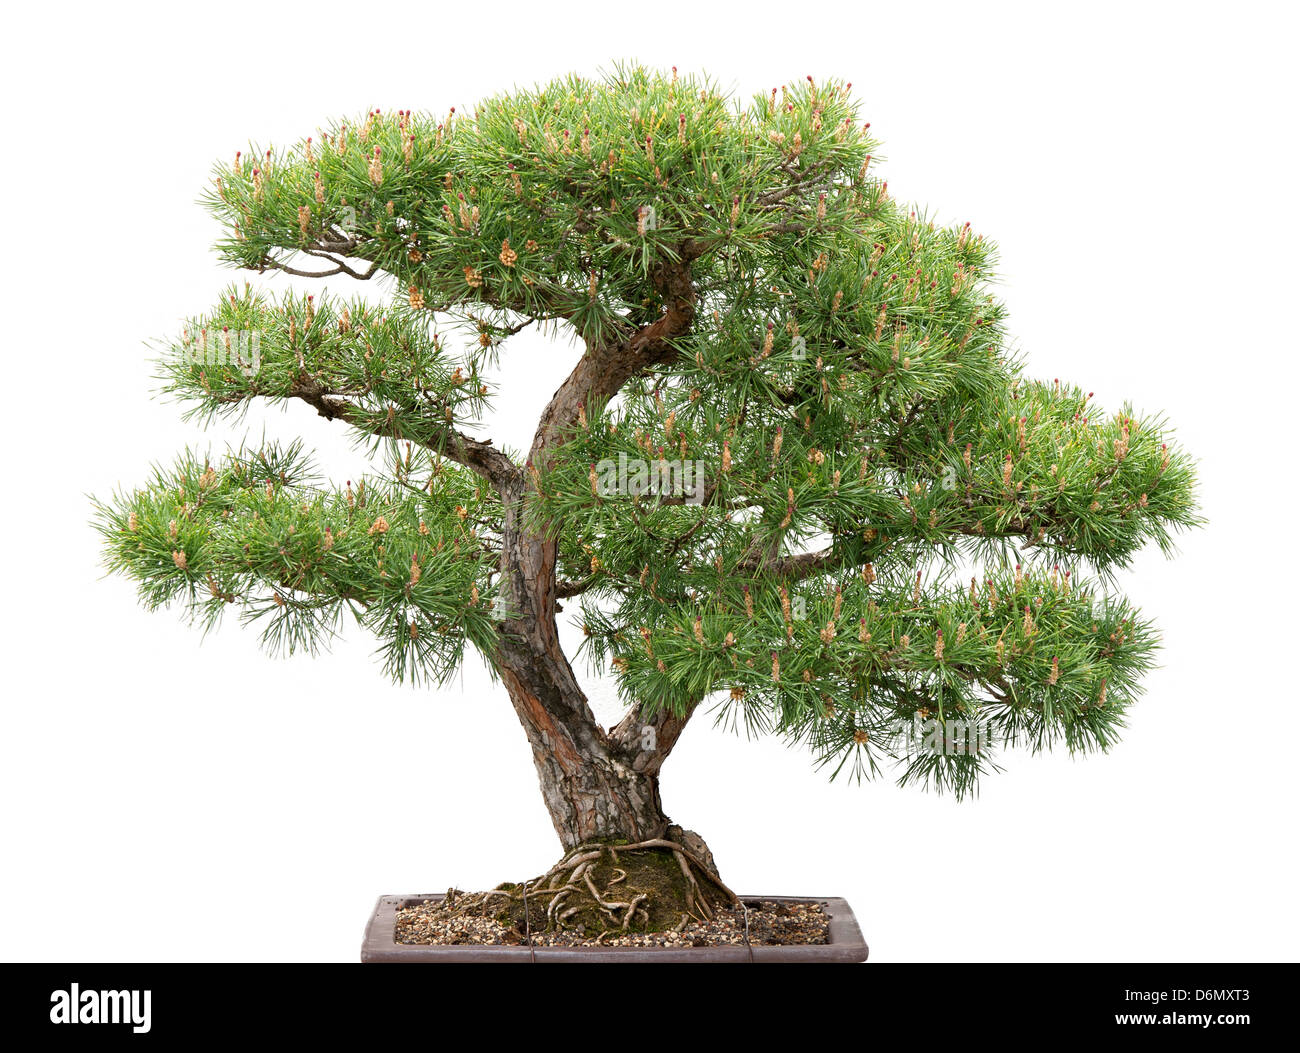 Föhren. Grüne Bonsai-Baum auf weißem Hintergrund Stockfotografie - Alamy